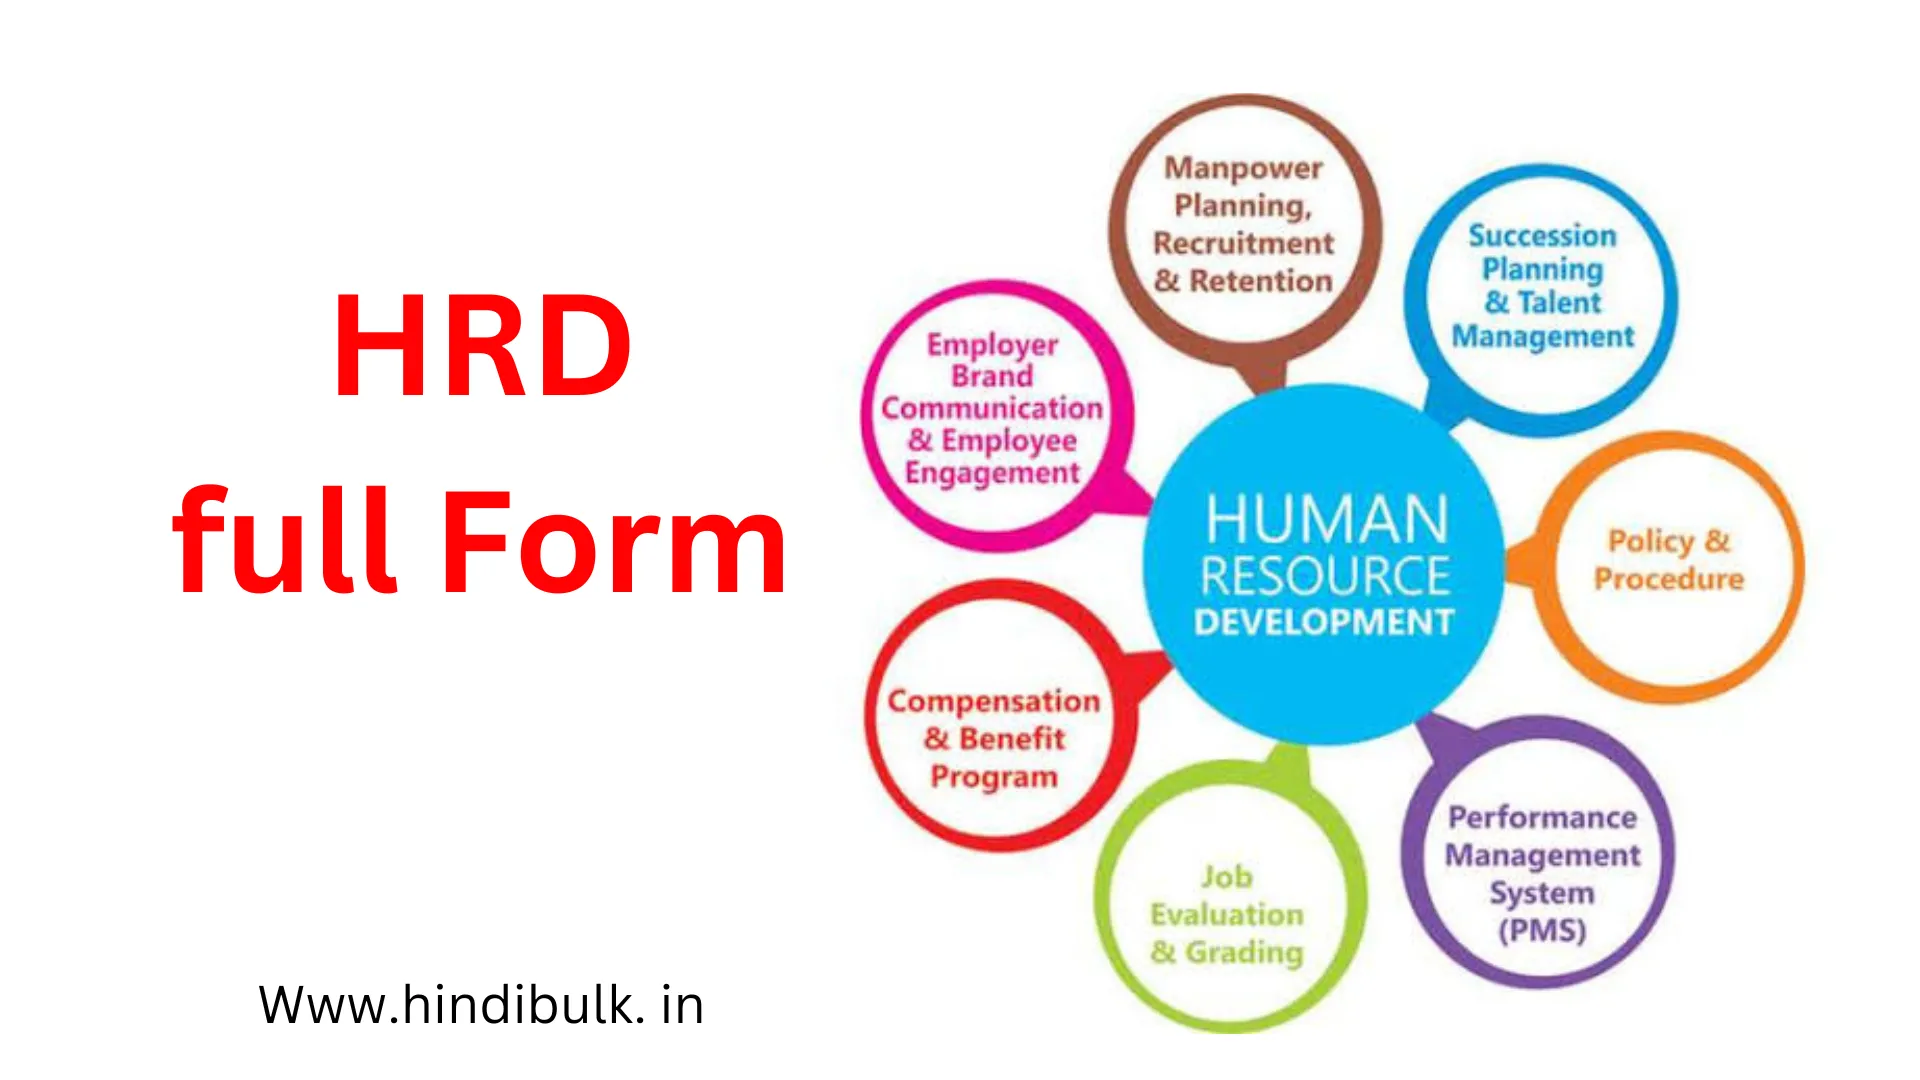 HRD की Full form क्या होती है?